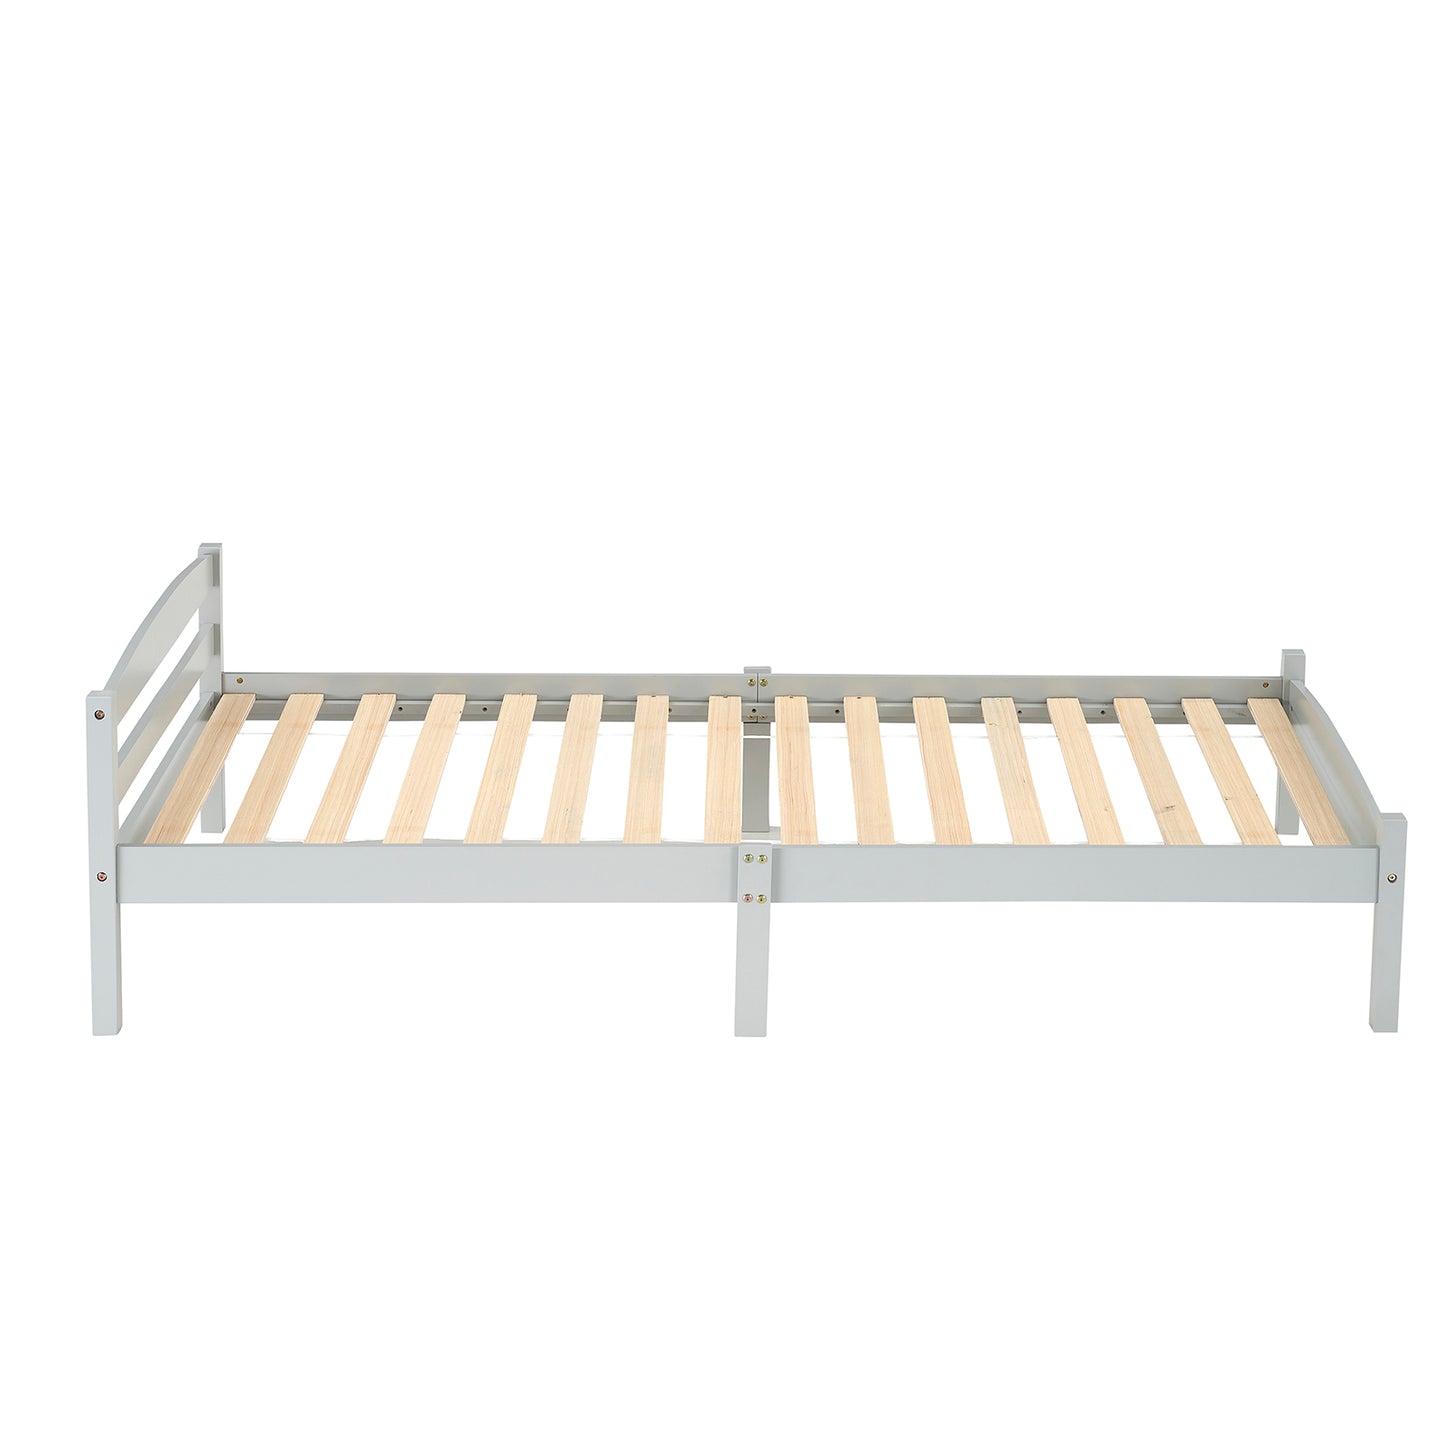 BIGLIA Single Pine Wooden Bed 96*198cm - Gray